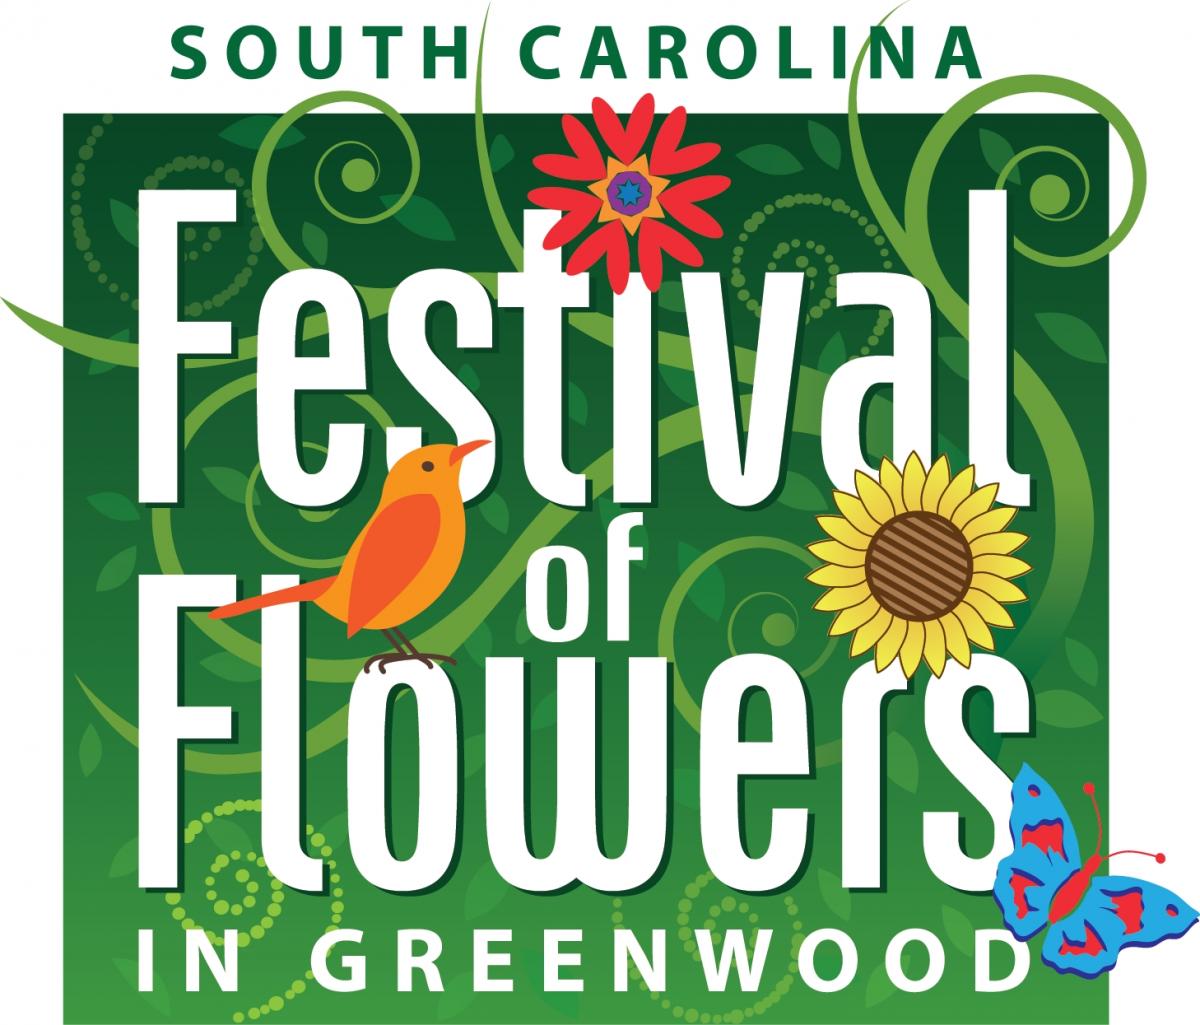 SC Festival of Flowers